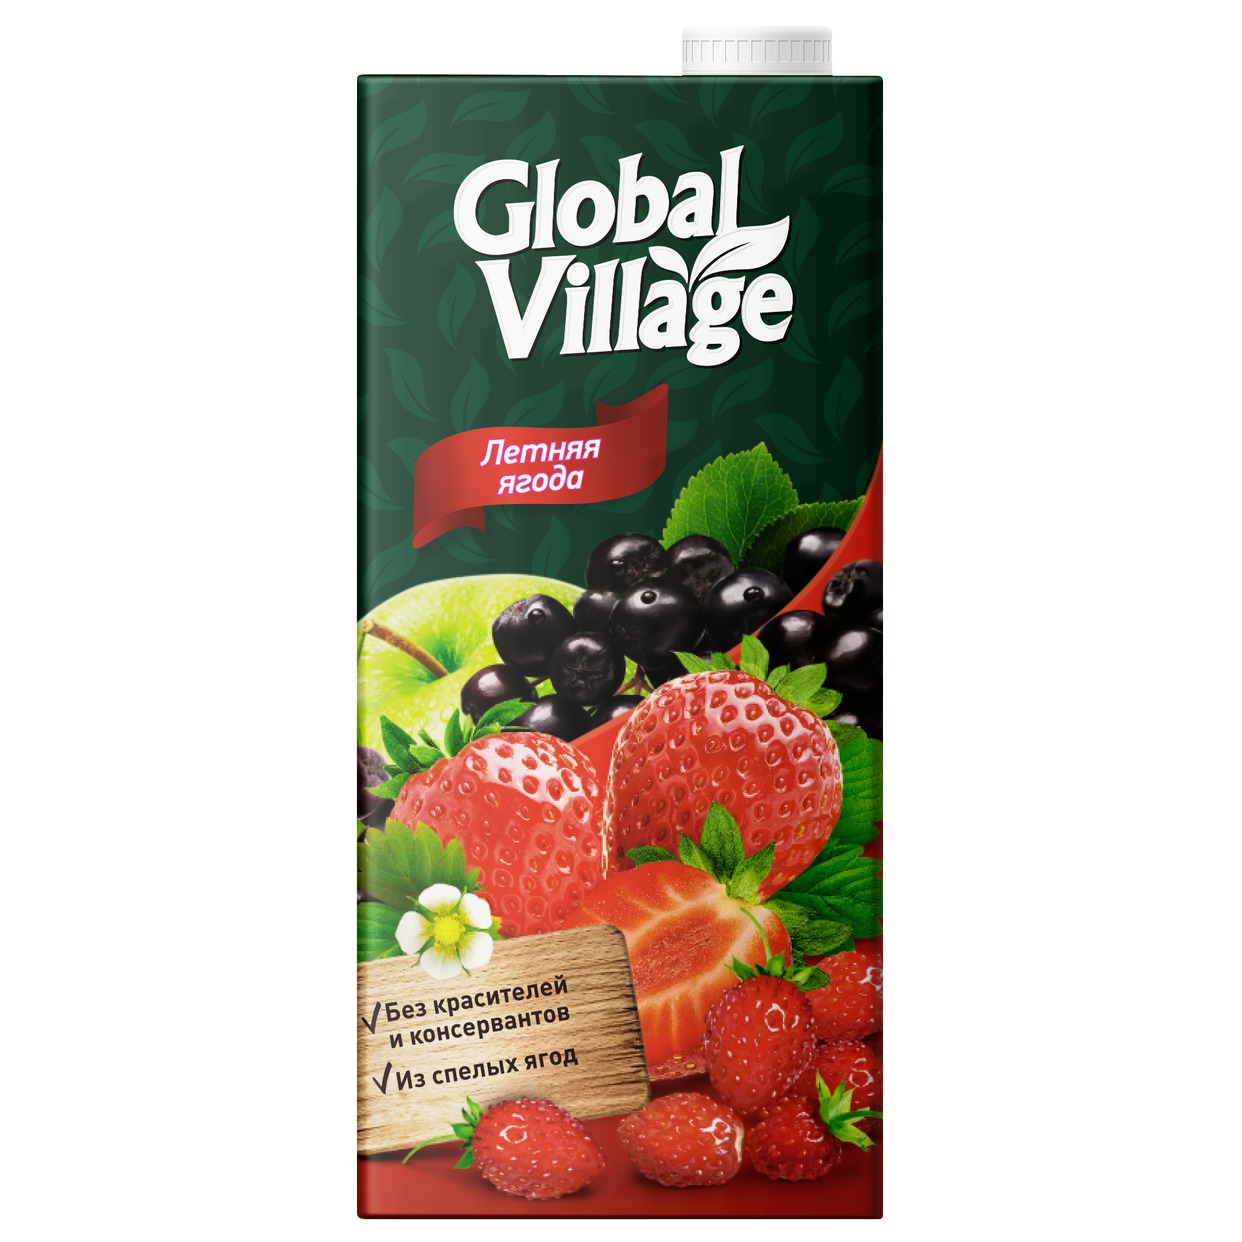 GLOBAL VILLAGE Сокосодержащий напиток из яблок, черноплодной рябины, клубники и земляники, 0,95л по акции в Пятерочке